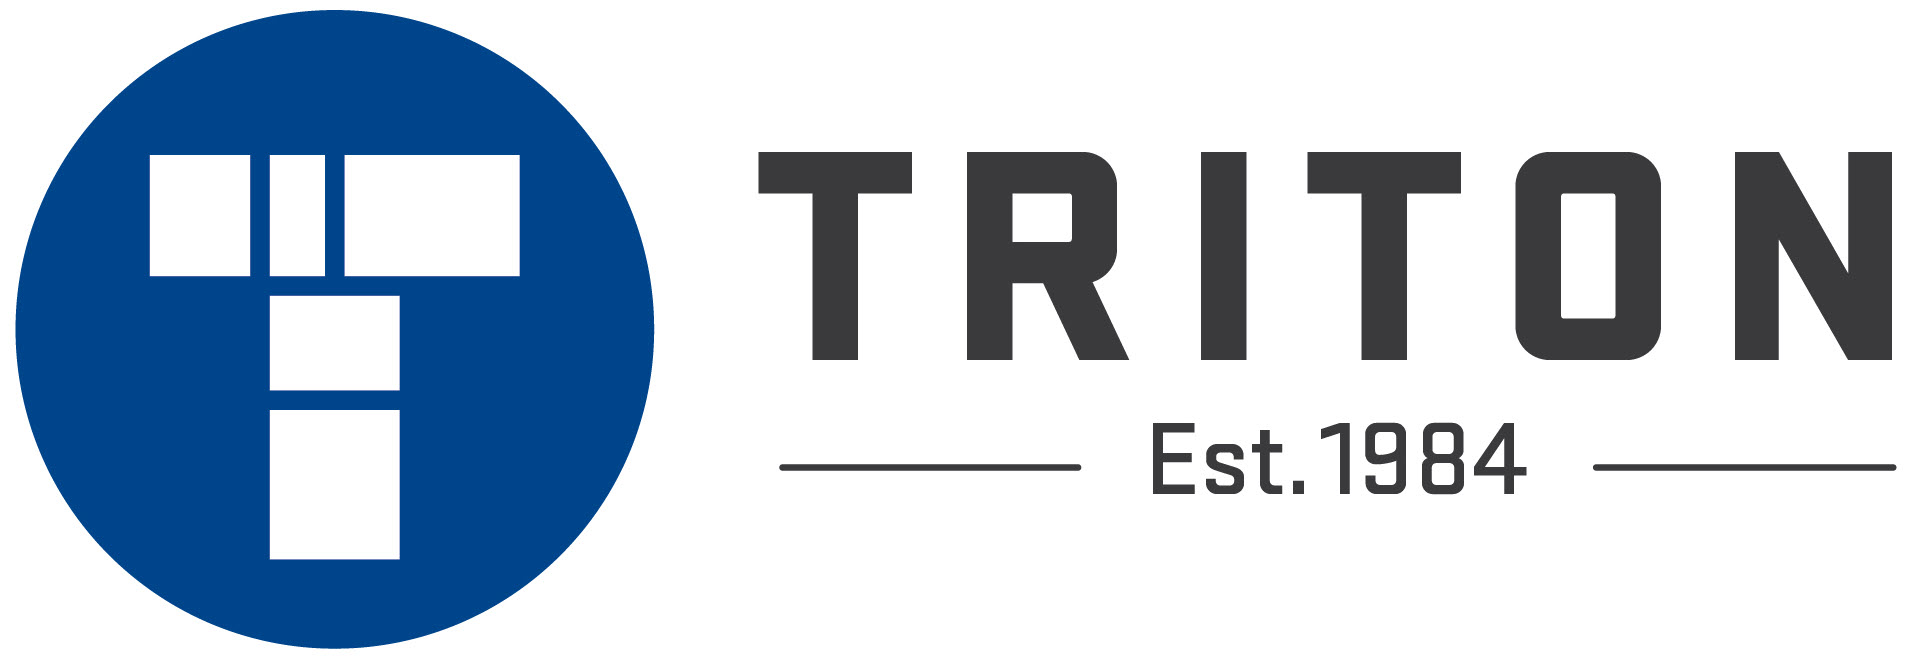 Triton Logo Horizontal 1984 2000x670